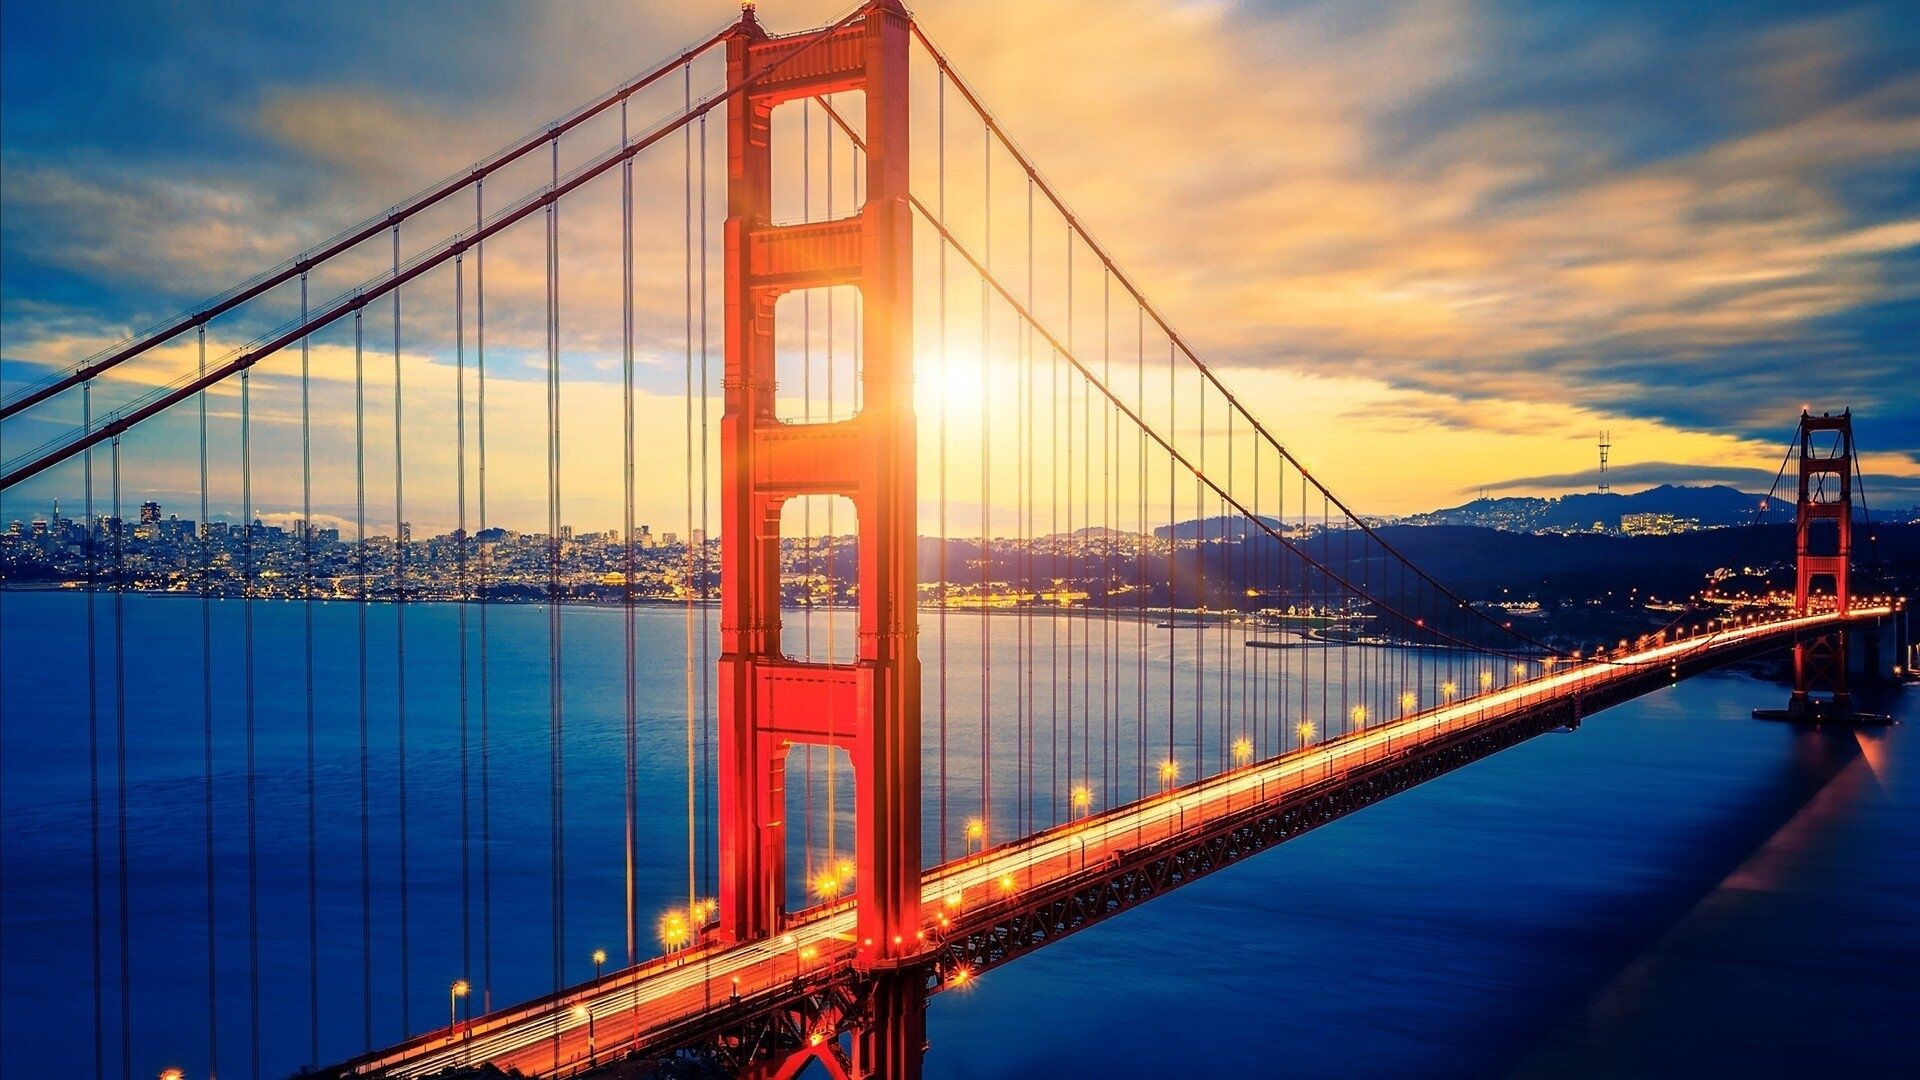 旧金山最佳金门大桥和渔人码头一日城市之旅